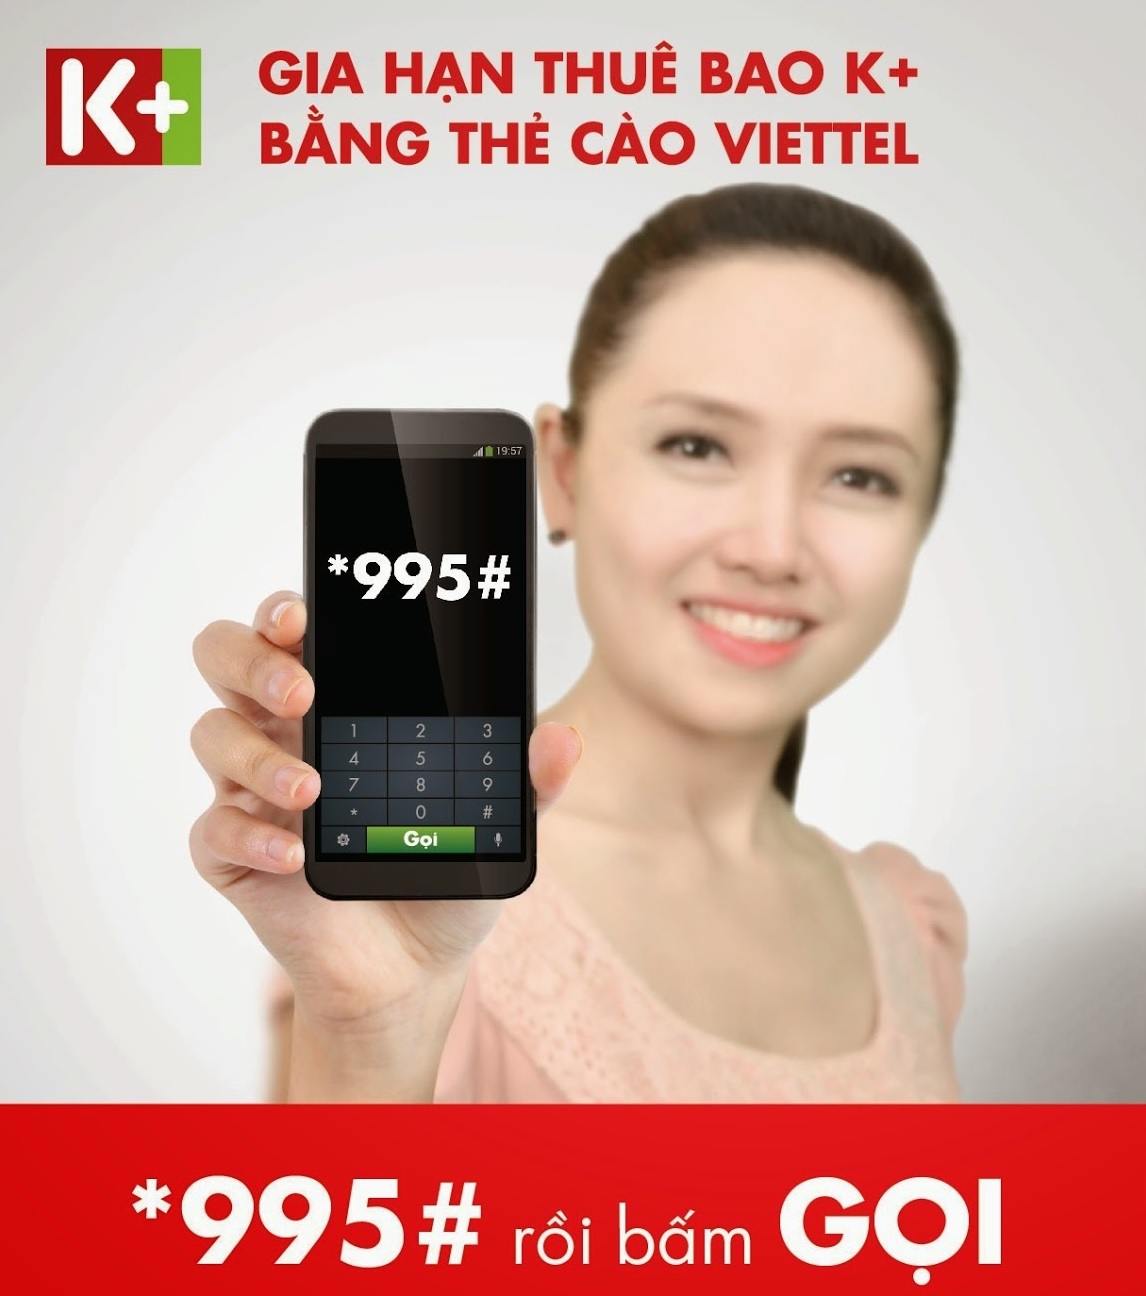 Gia hạn thuê bao K+ bằng thẻ cào điện thoại Viettel *995#